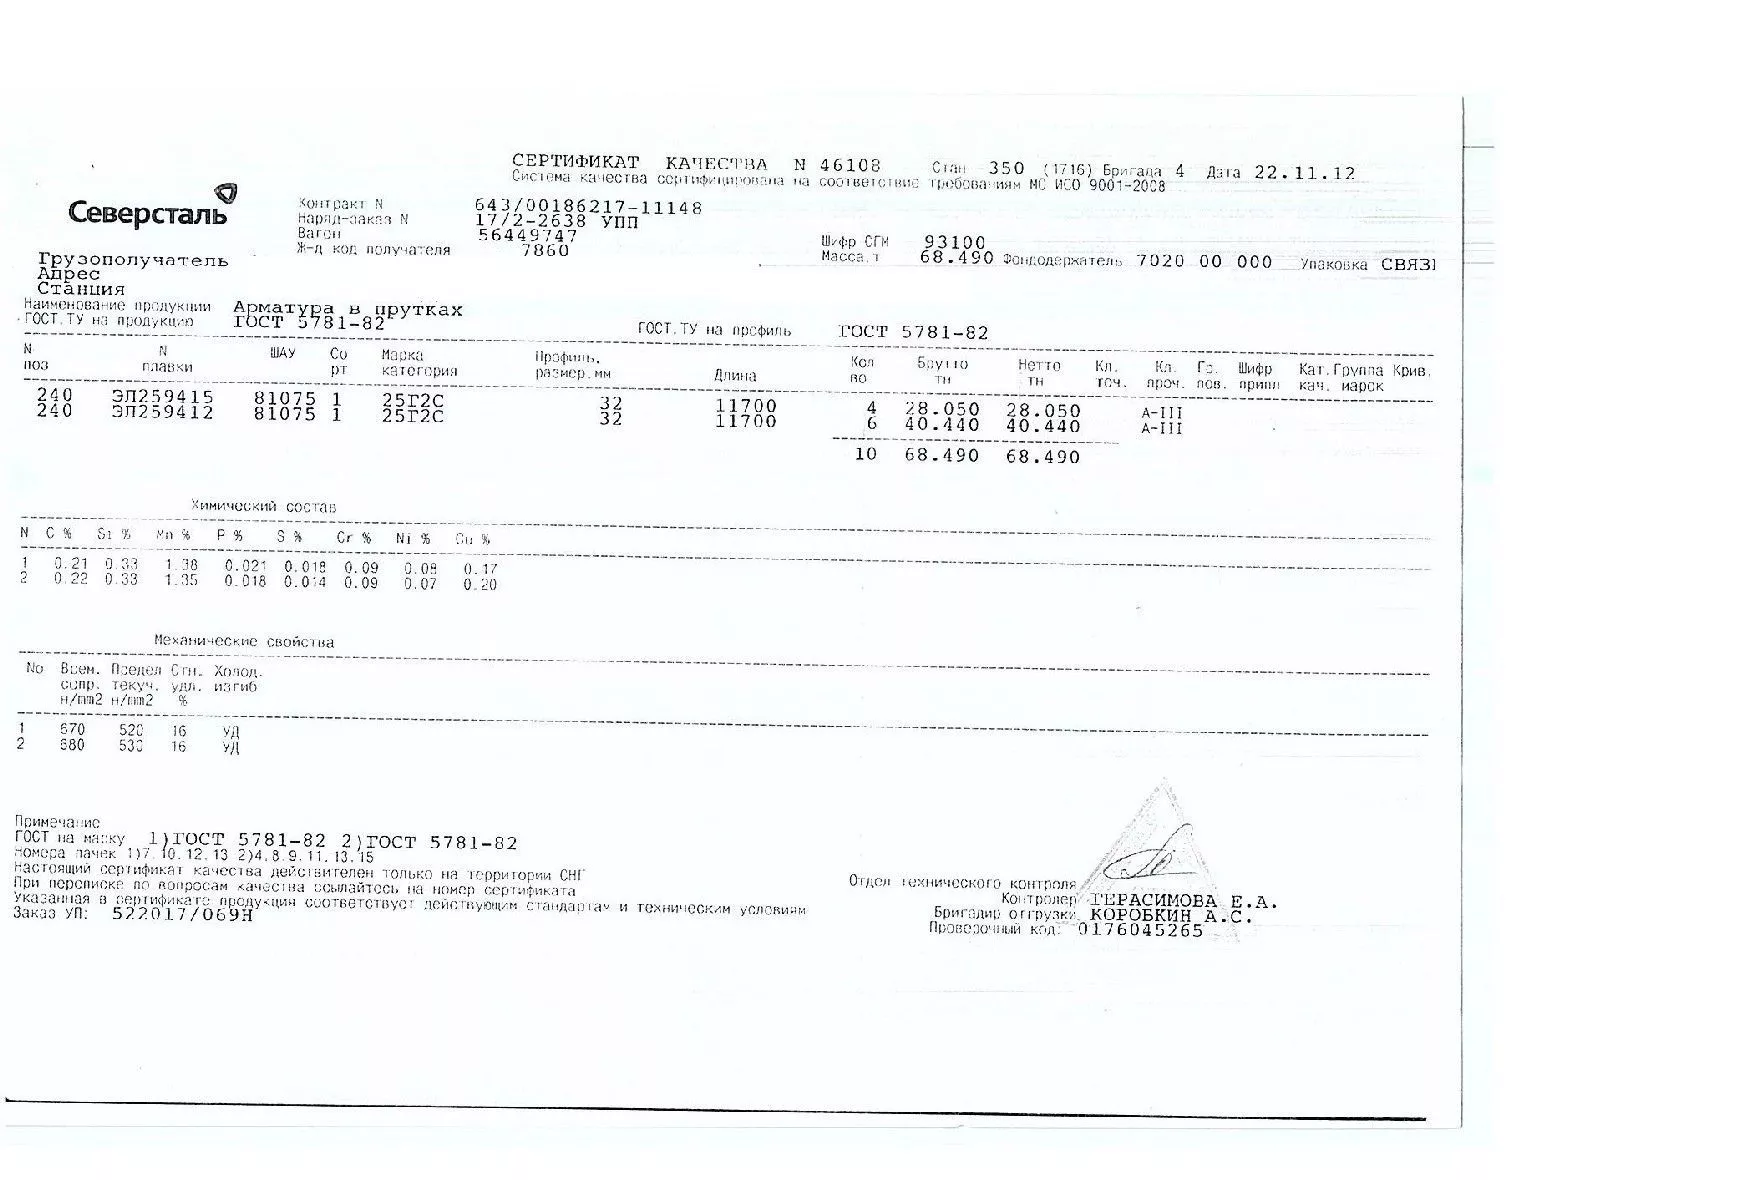 Сертификат на арматуру 32 марки 25Г2С от 2012-11